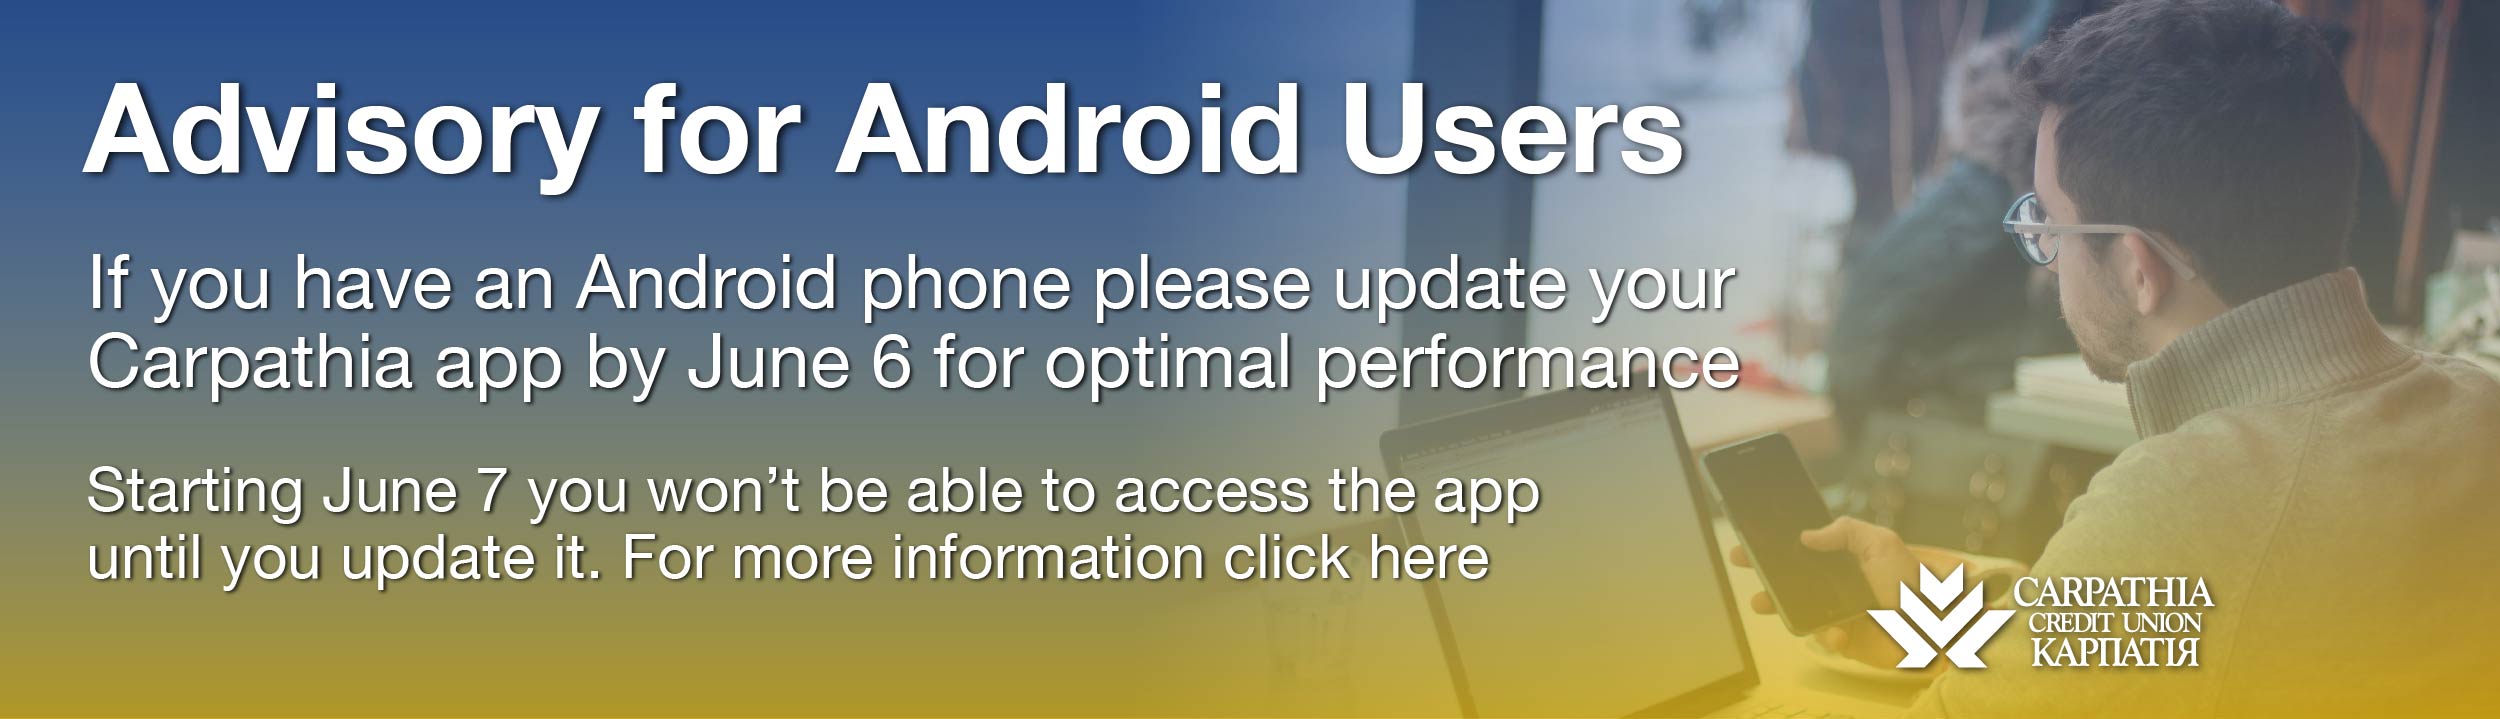 Android App Advisory